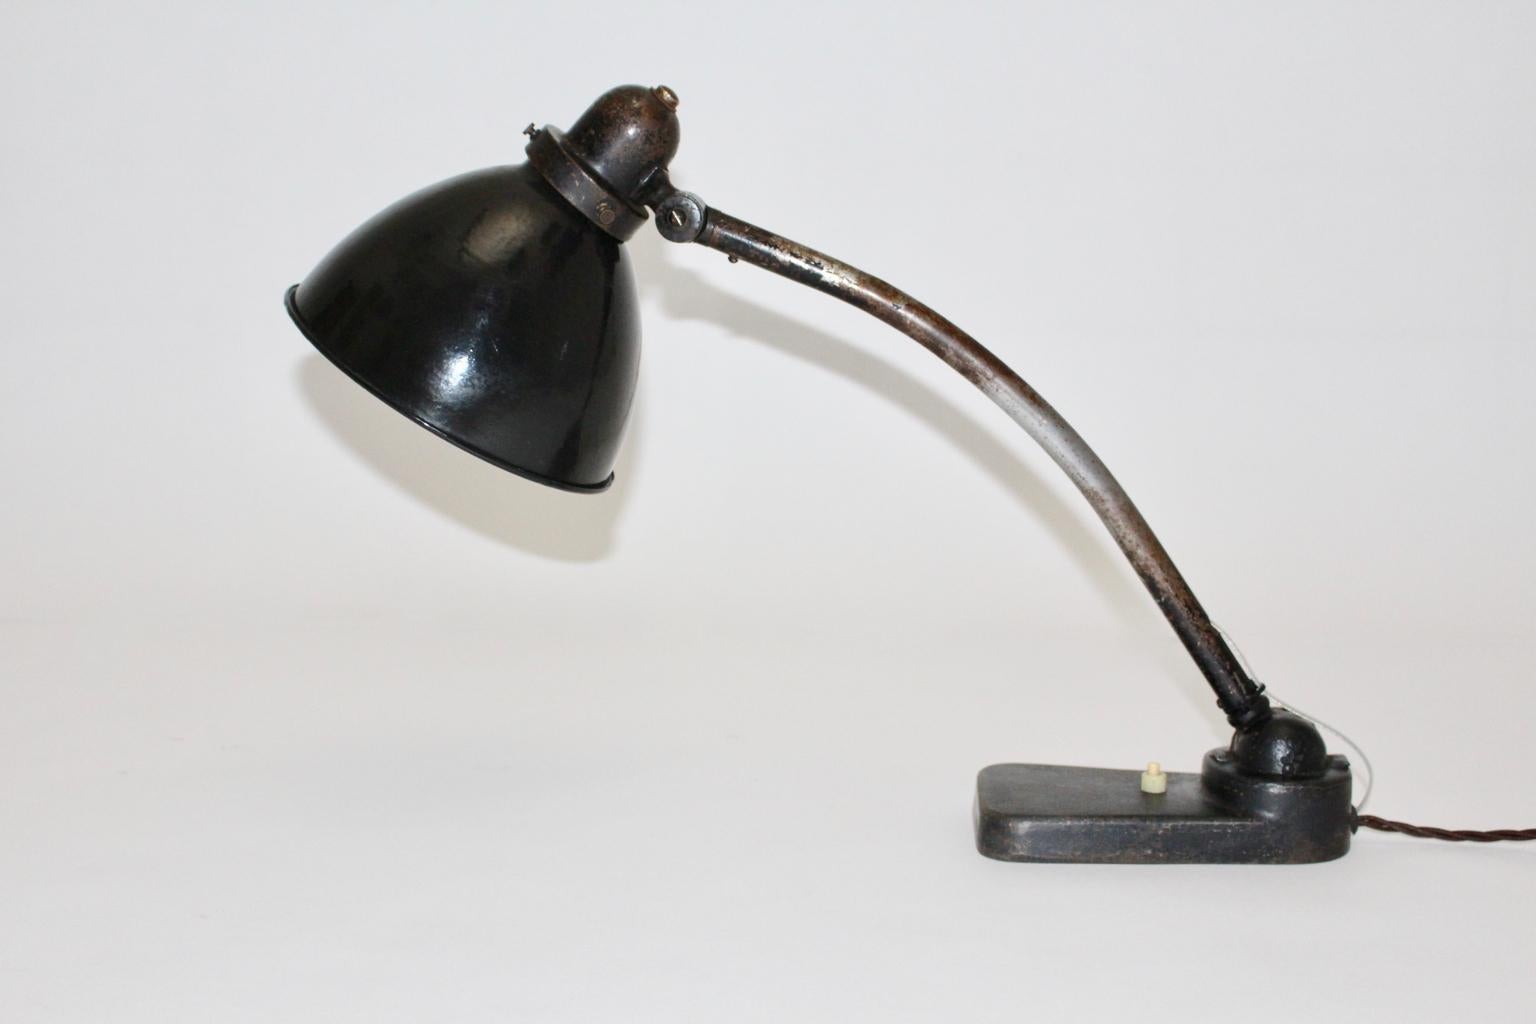 Lampe de table ou lampe d'architecte Bauhaus des années 1930 en Allemagne.
Une belle lampe de table en métal laqué noir, qui présente un abat-jour réglable de haut en bas.
Alors que l'abat-jour est en émail blanc et noir, la lampe de table est en